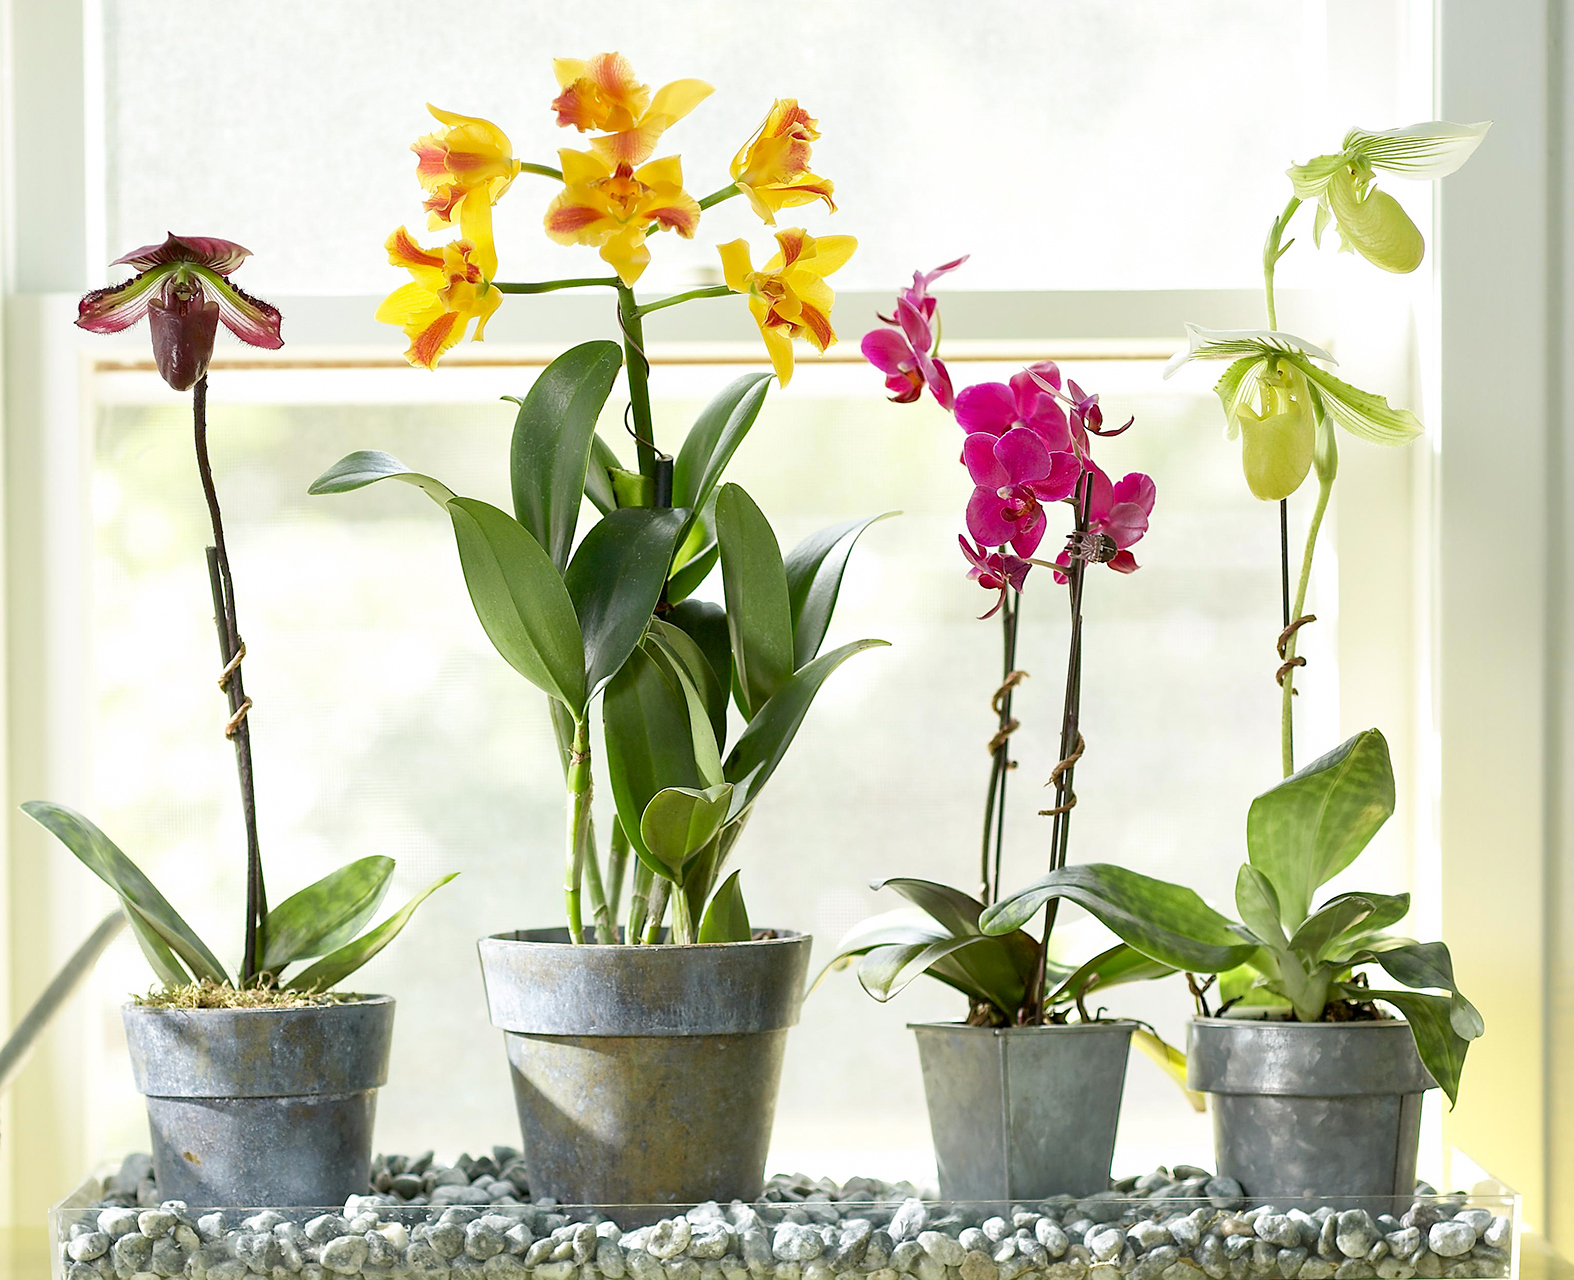 6 Semplici Trucchi per Rendere le Tue Orchidee Splendide!